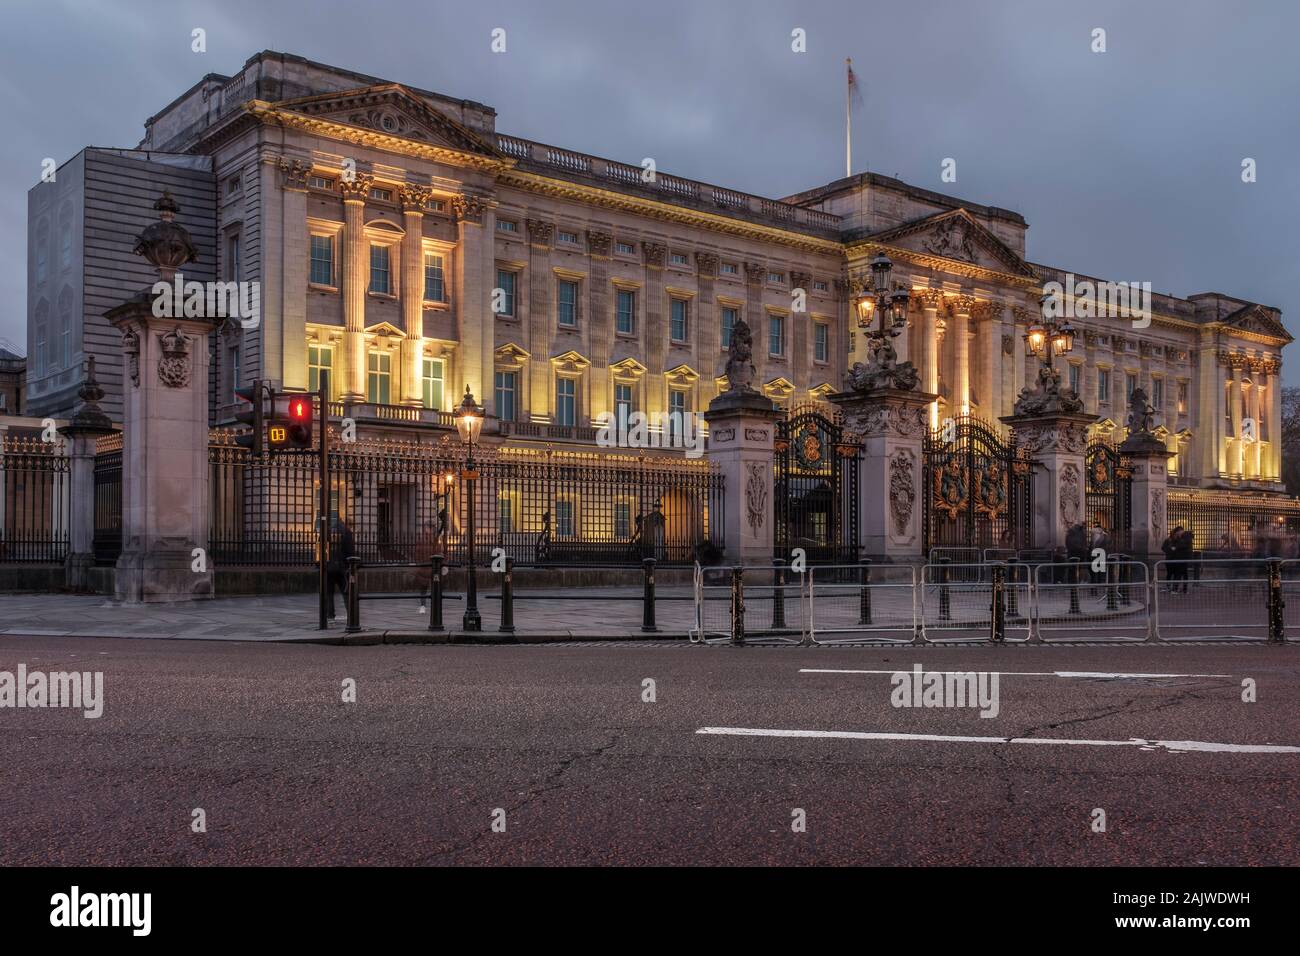 El Palacio de Buckingham, Londres, Inglaterra Foto de stock